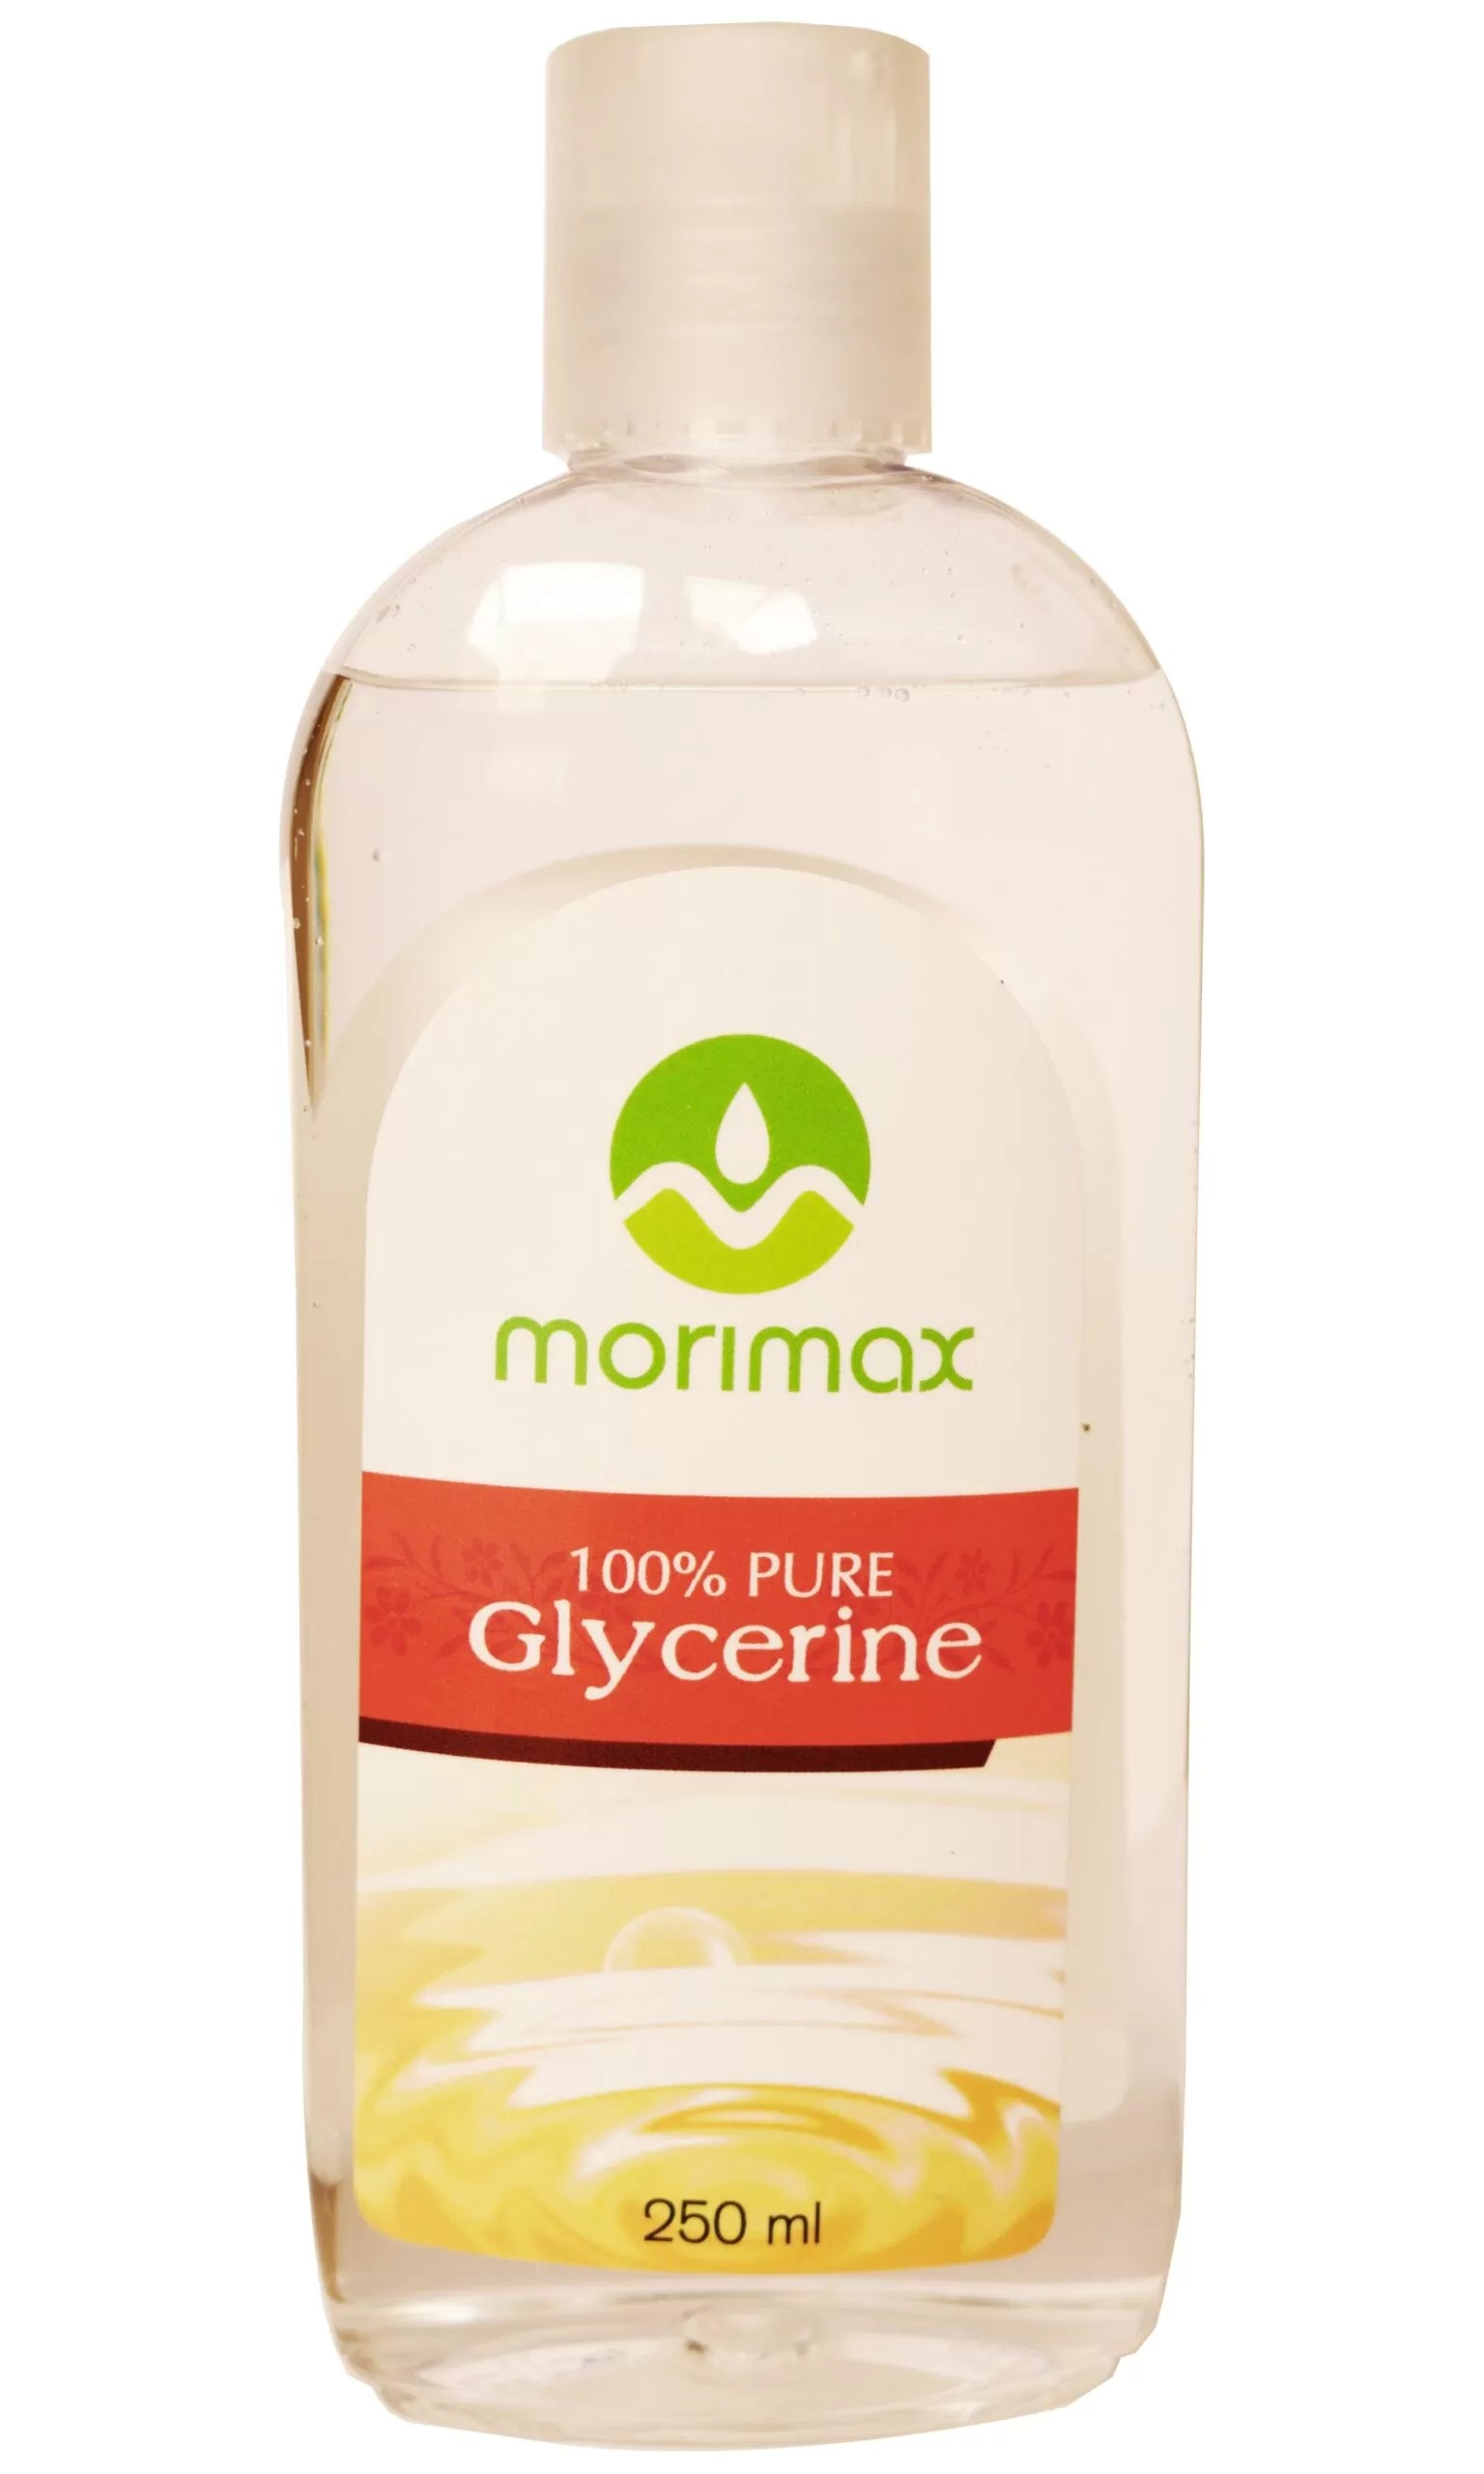 Morimax - 100% Pure Glycerine 250ml